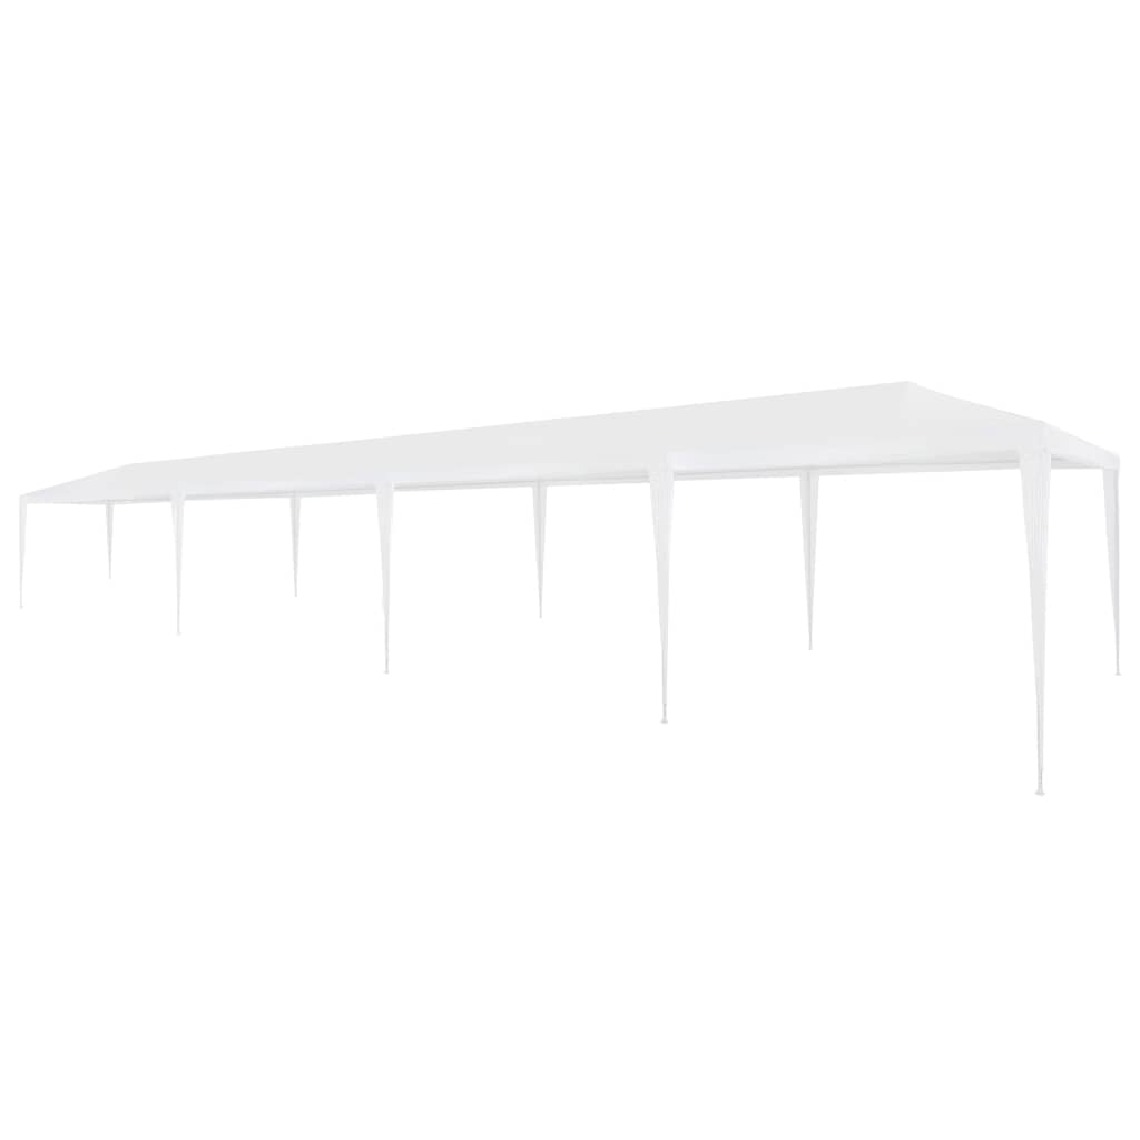 Chunhelife - Tente de réception 3 x 12 m PE Blanc - Marquise, auvent